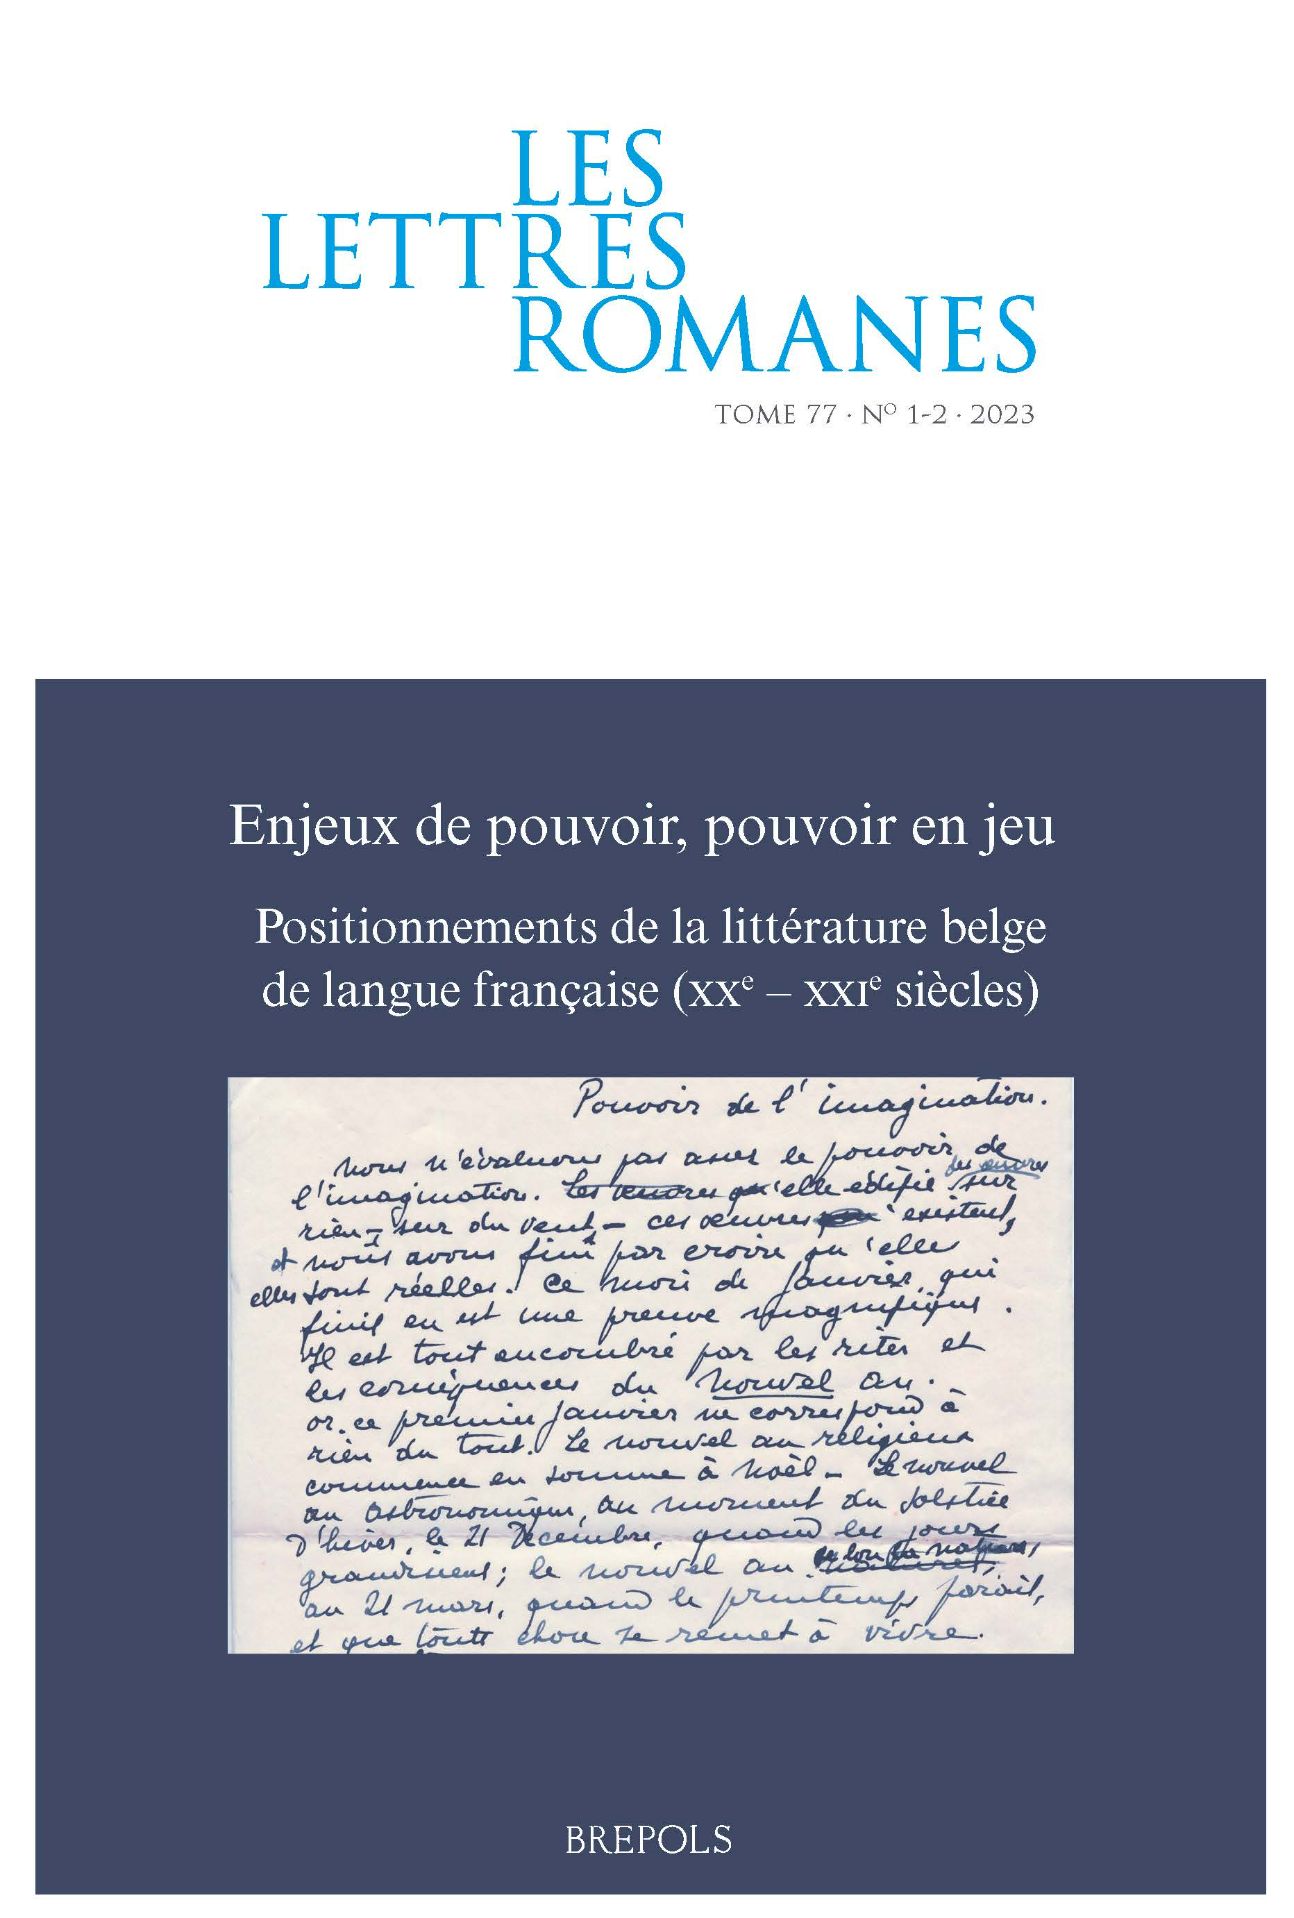 Les Lettres romanes, n° 77 1-2 (2023): 